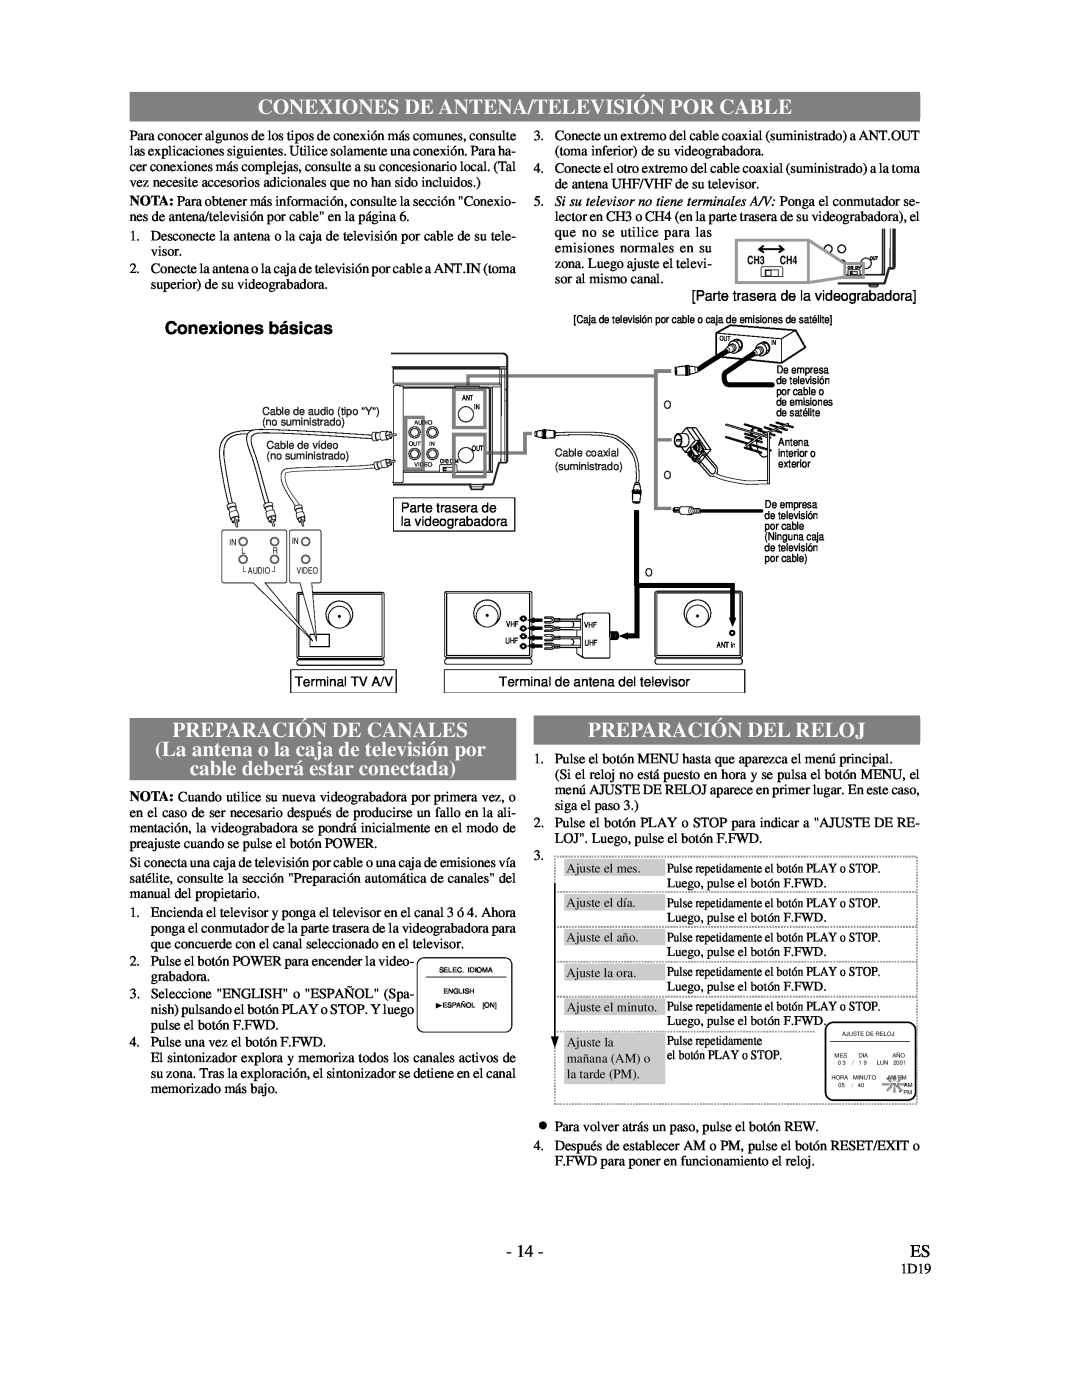 Symphonic VR-501 owner manual Conexiones De Antena/Televisión Por Cable, Preparación De Canales, Preparación Del Reloj 